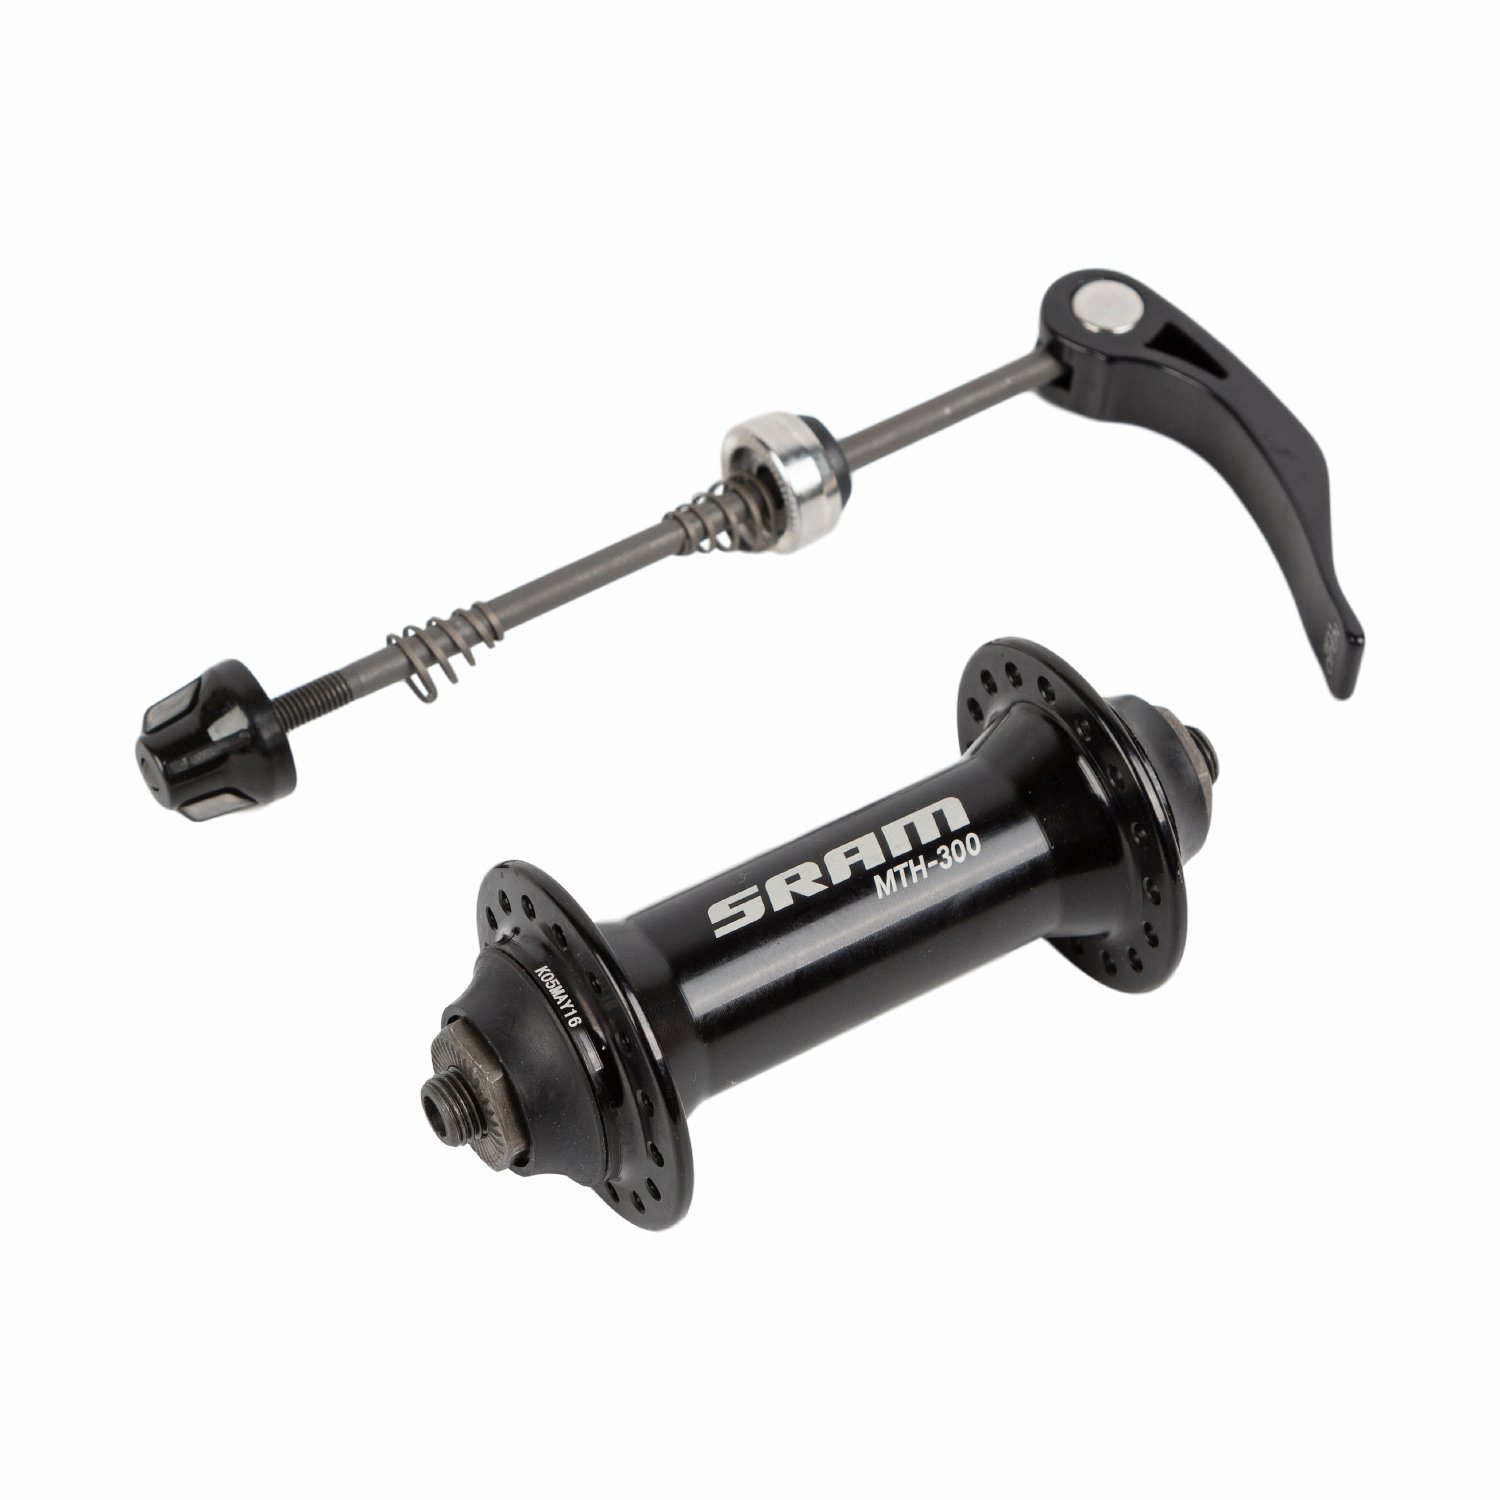 Велосипедная втулка SRAM MTB 300 Front, передняя, 32 отверстия, чёрная, 00.2015.081.080 втулка передняя 32 отверстия эксцентрик алюминий